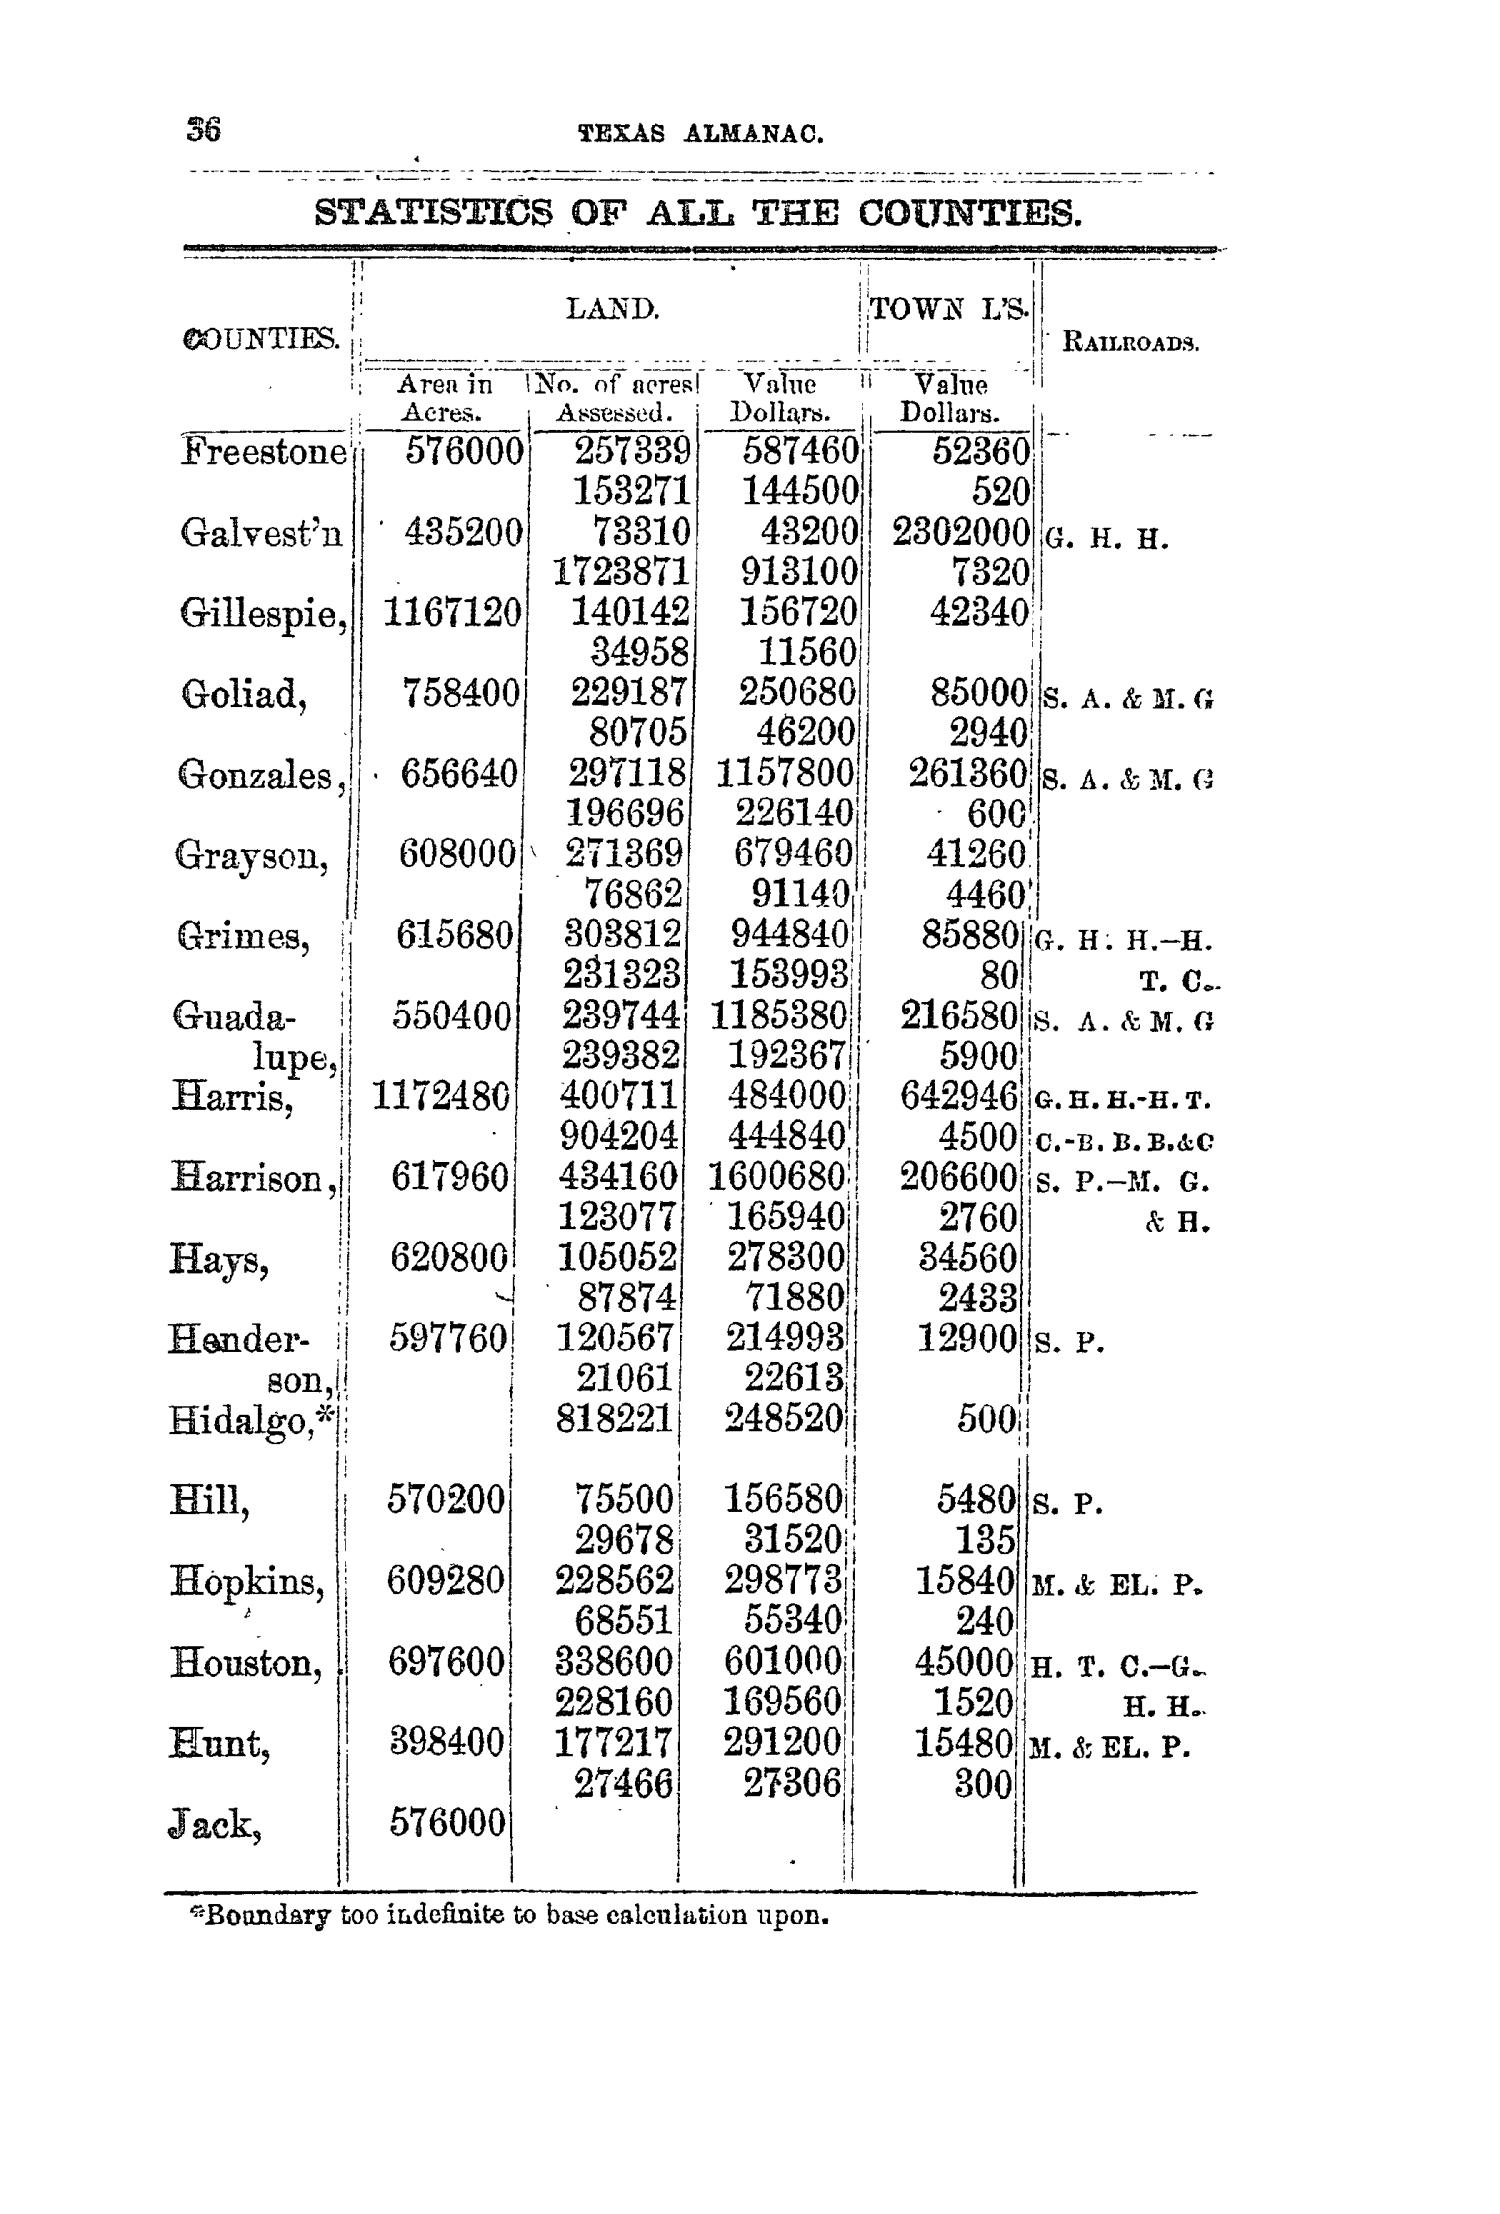 The Texas Almanac for 1858
                                                
                                                    36
                                                